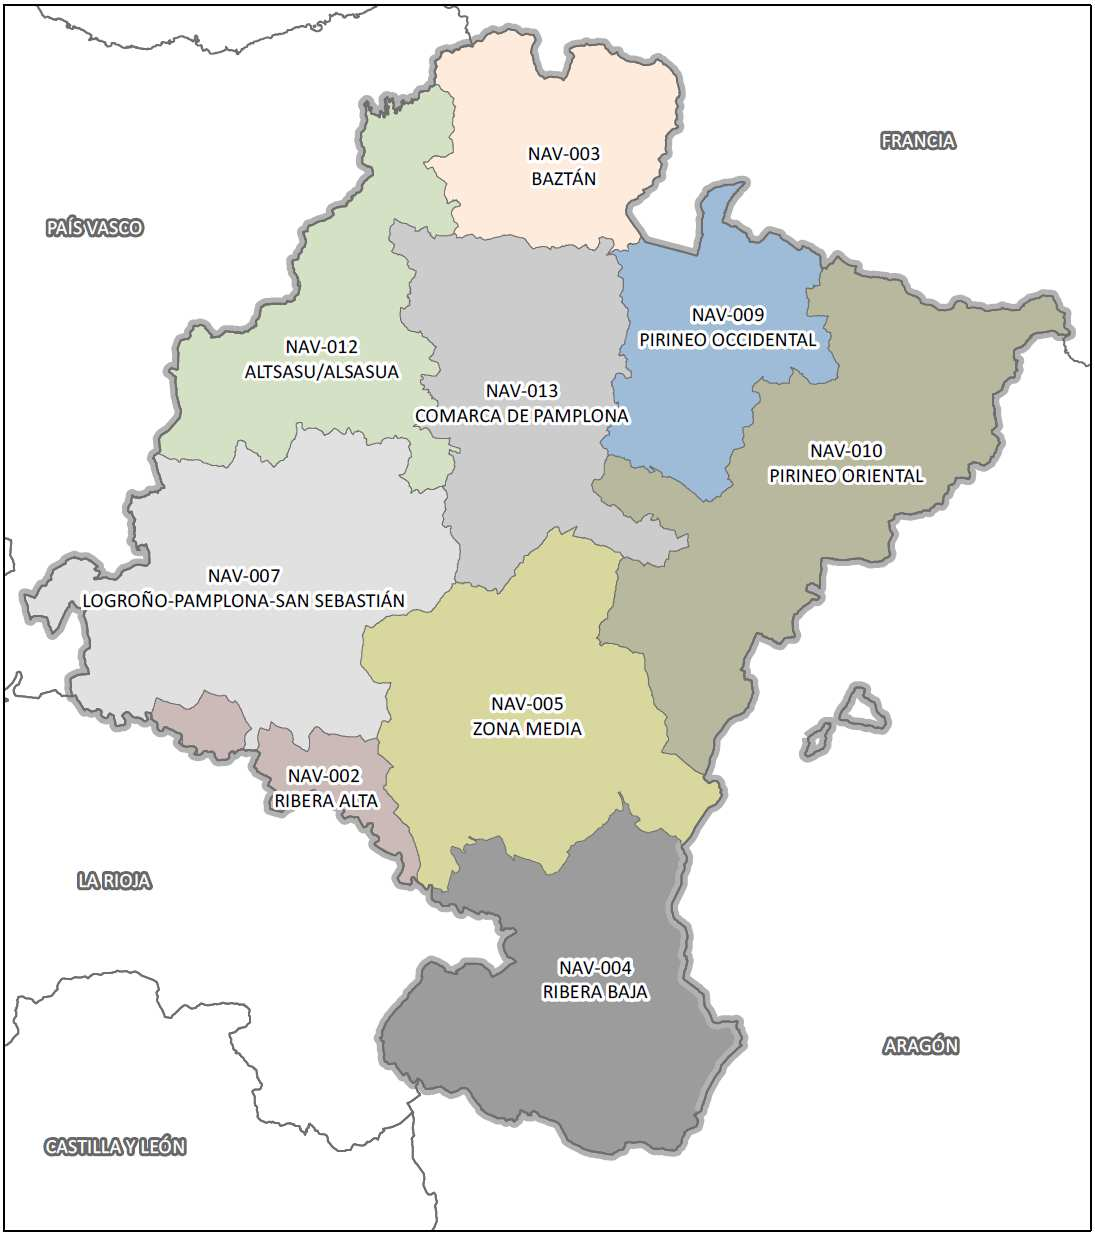 Tal y como se ha indicado, se ha planteado una zonificación de Navarra en base a criterios de accesibilidad y necesidades de movilidad de la población conforme se muestra en el siguiente mapa de